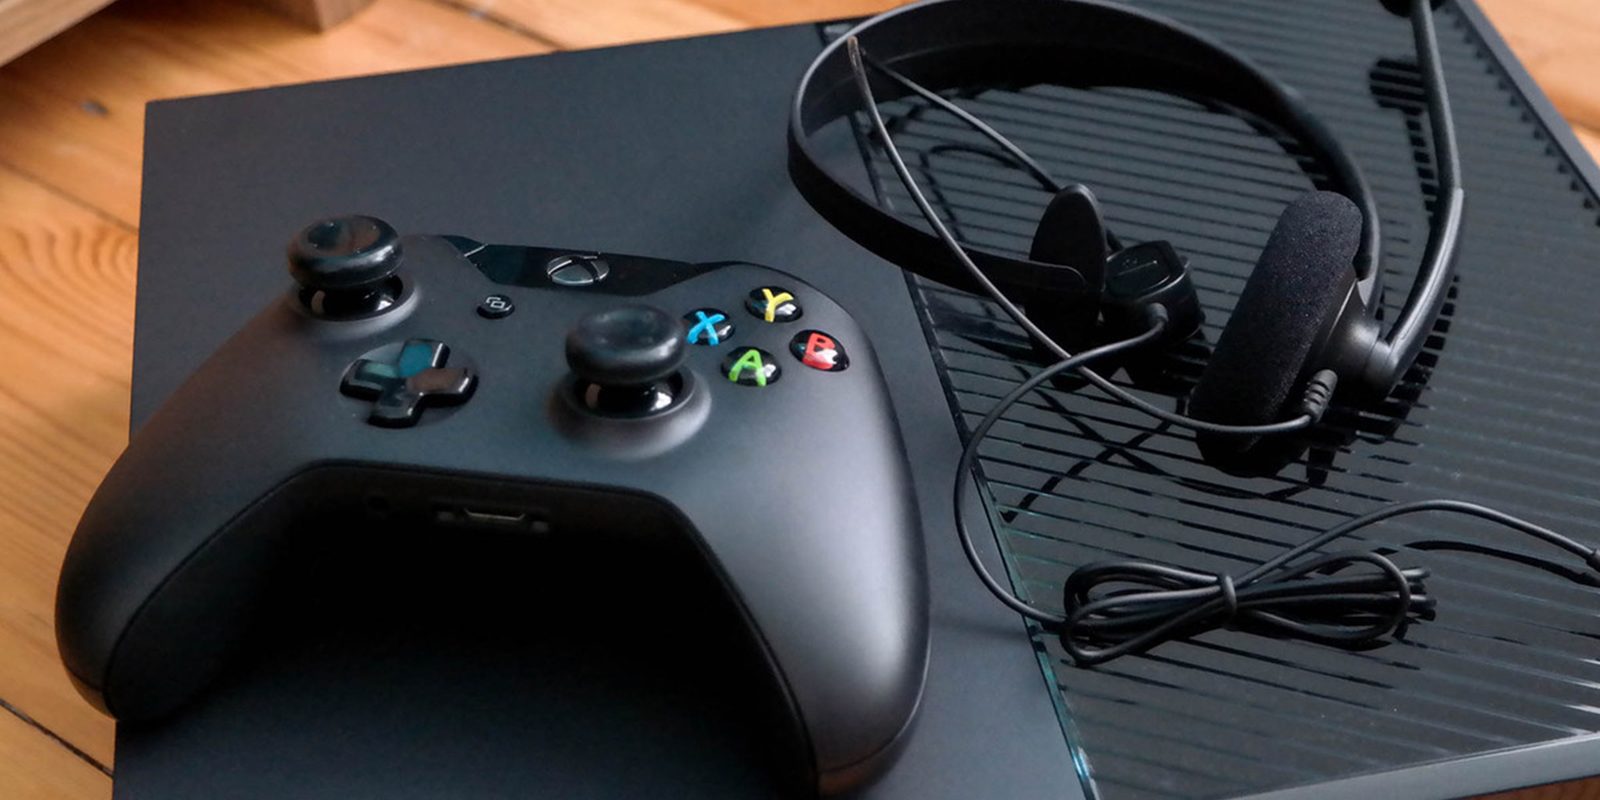 Confirmado: Xbox One derrota en ventas a PS4 durante el mes de julio en USA